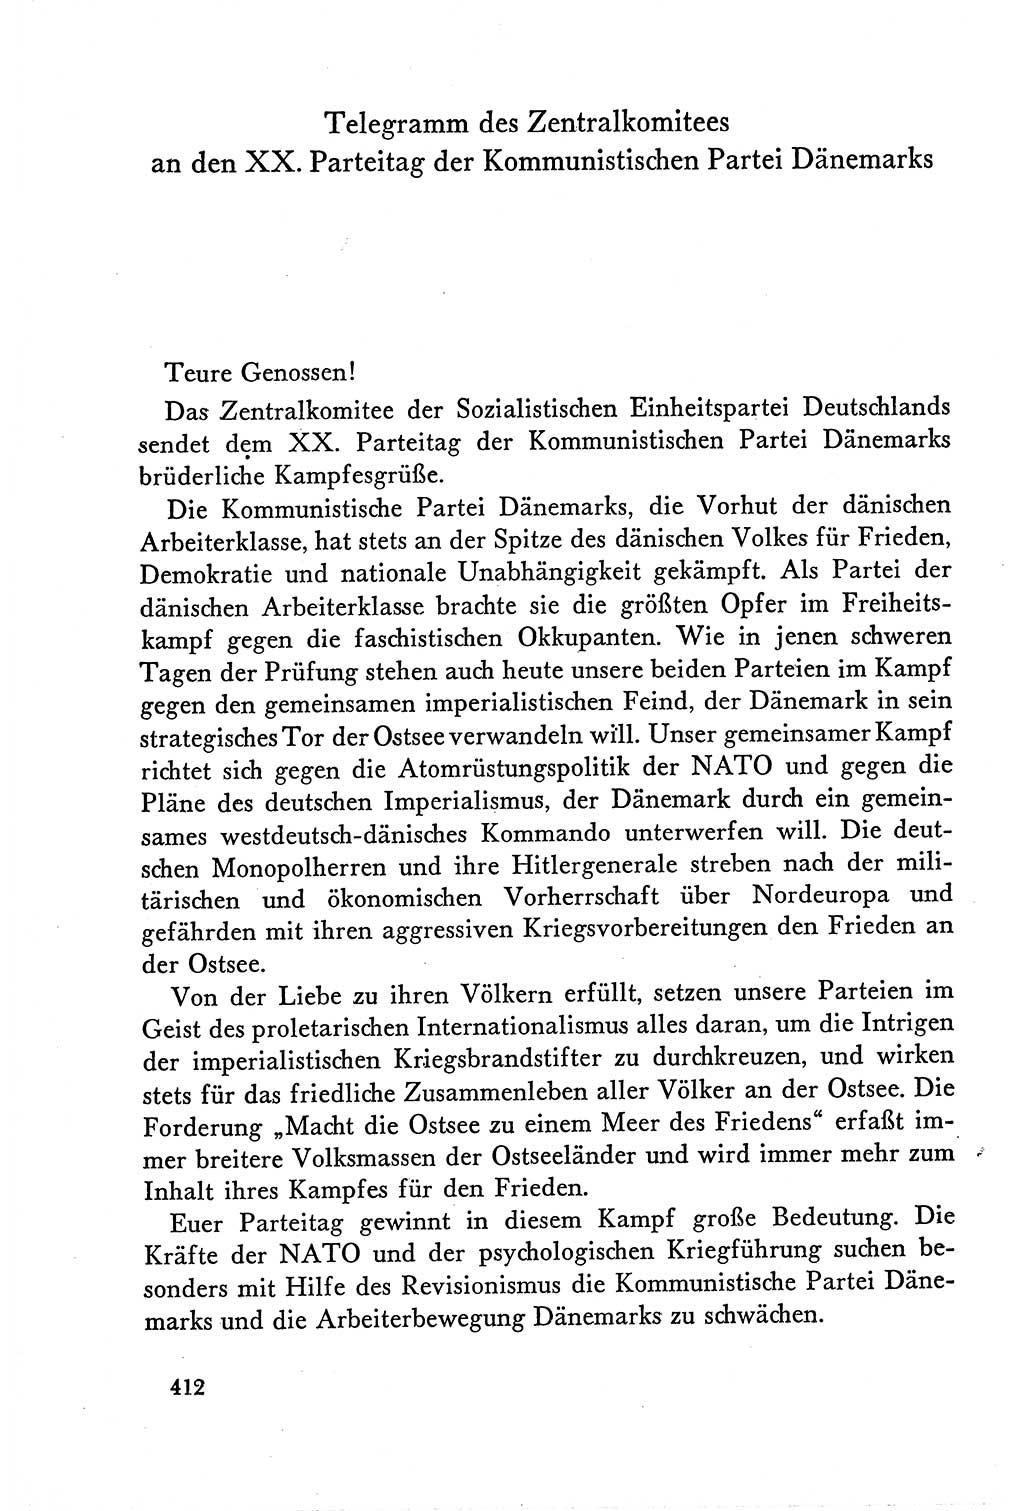 Dokumente der Sozialistischen Einheitspartei Deutschlands (SED) [Deutsche Demokratische Republik (DDR)] 1958-1959, Seite 412 (Dok. SED DDR 1958-1959, S. 412)